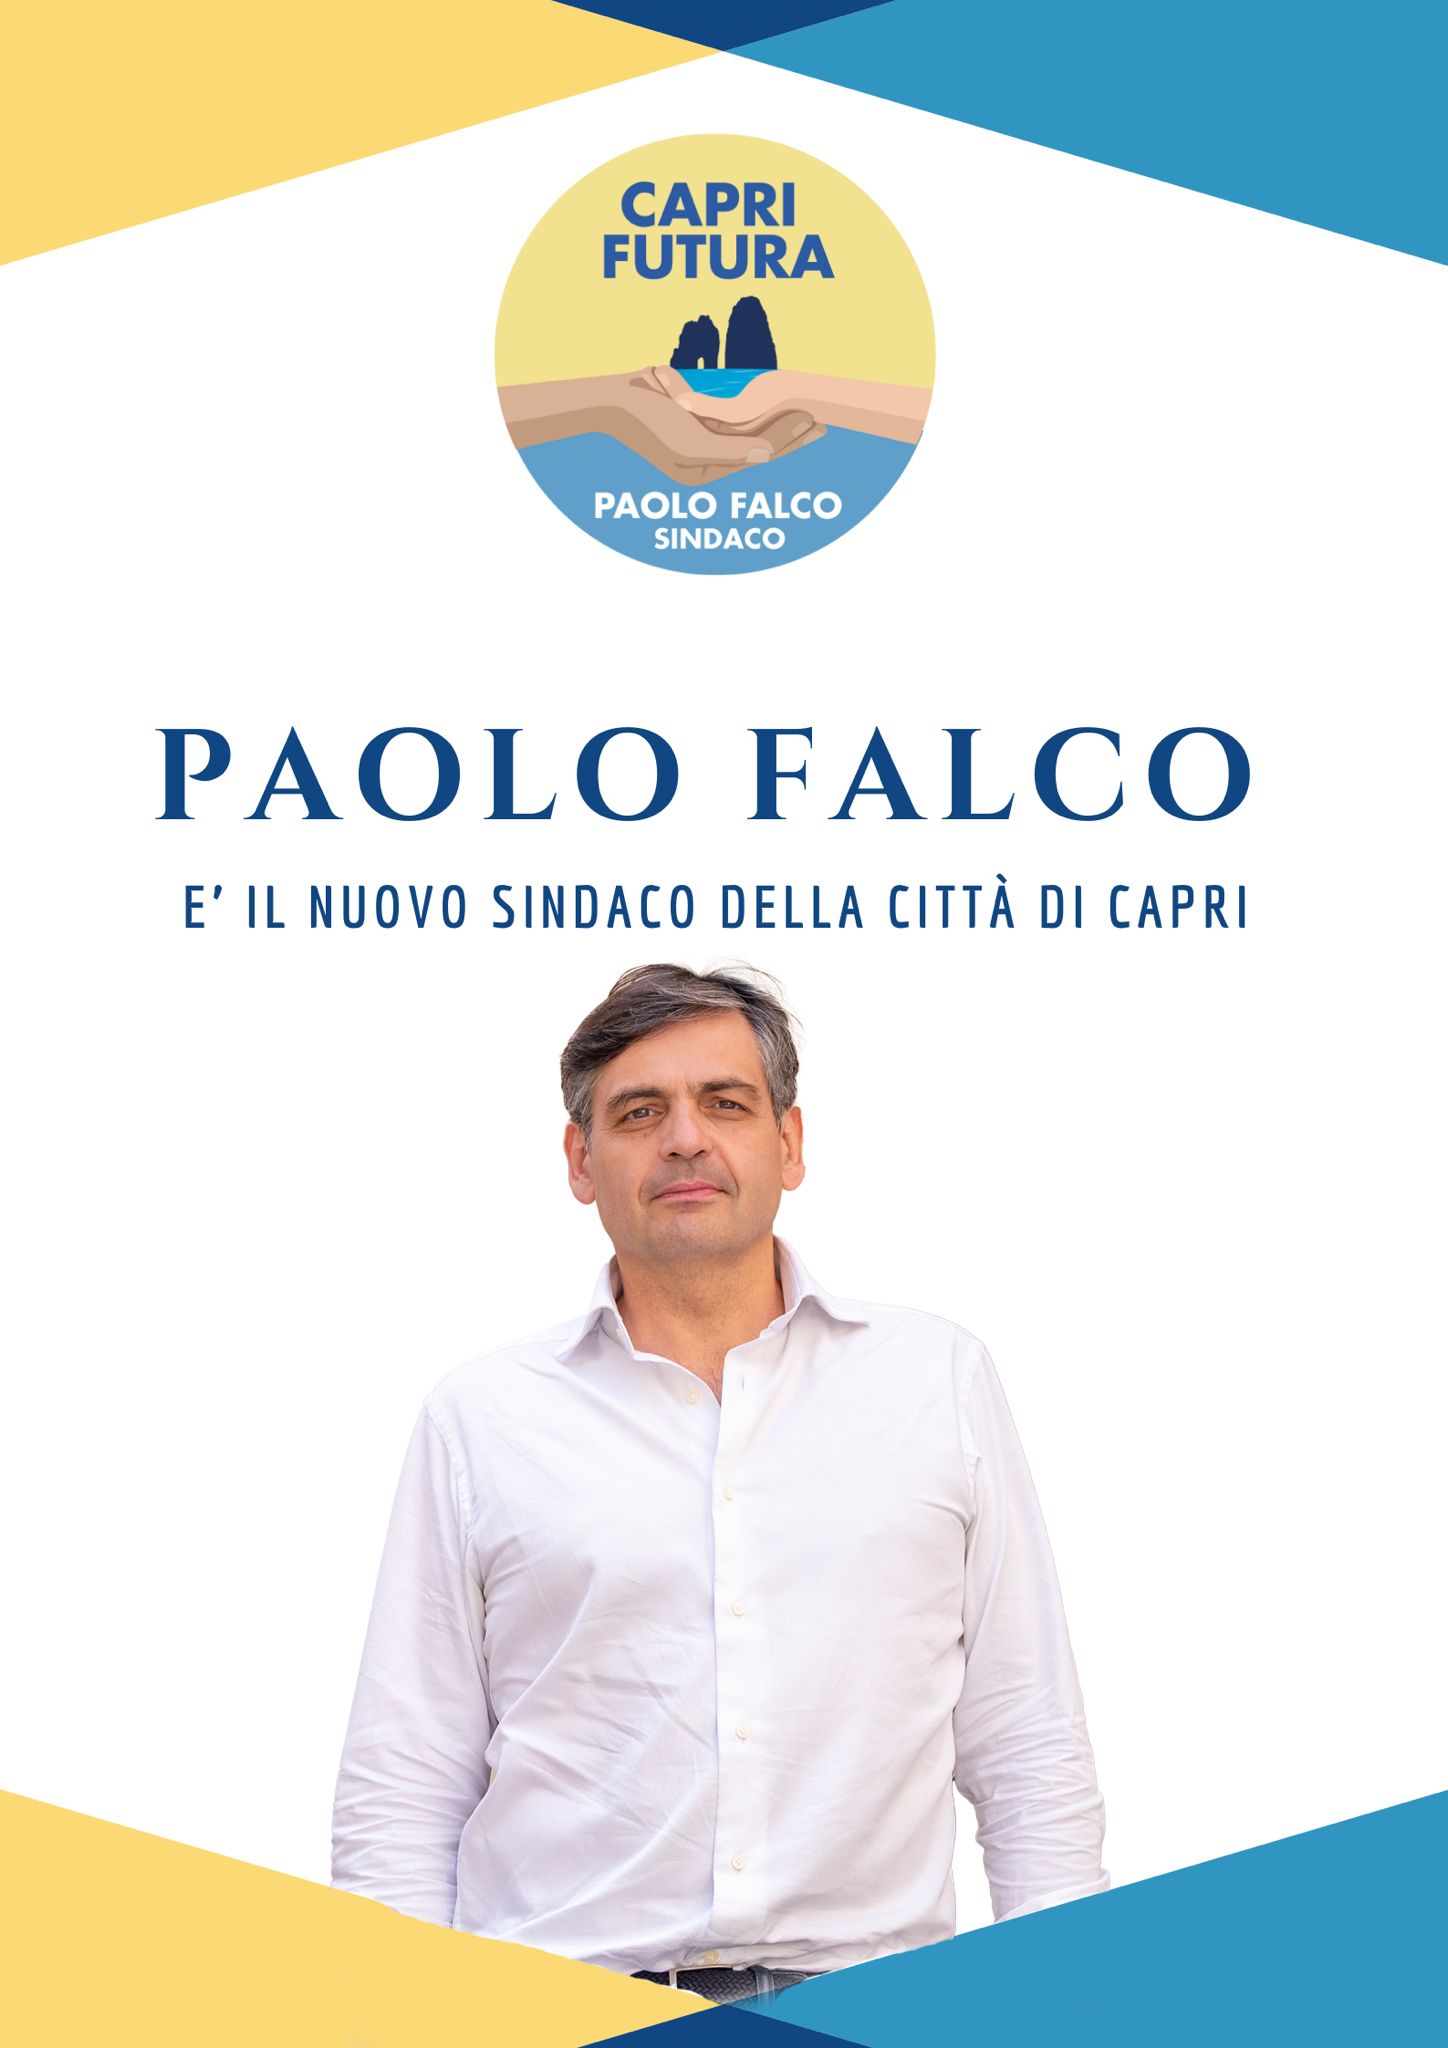 La lista Capri Futura trionfa: Paolo Falco è il nuovo sindaco di Capri